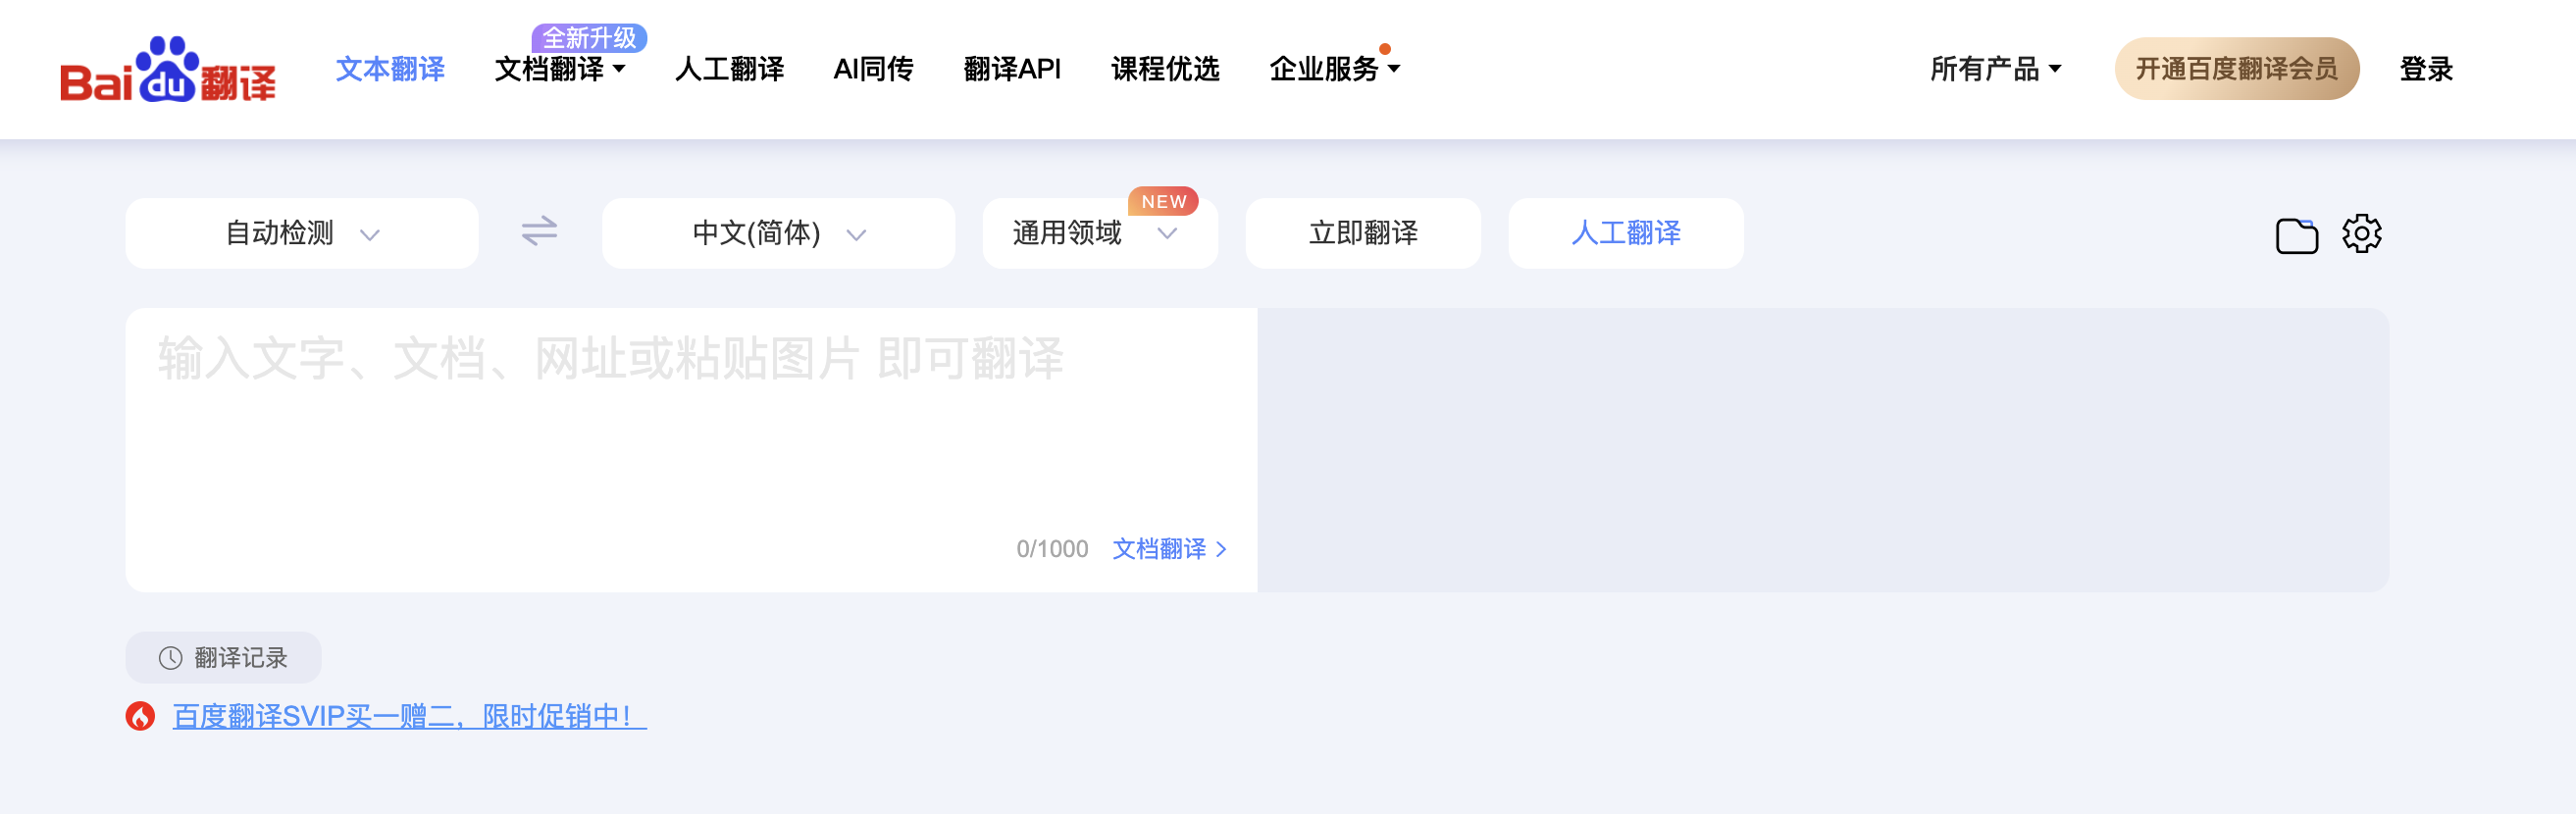 เว็บแปลภาษา Fanyi Baidu